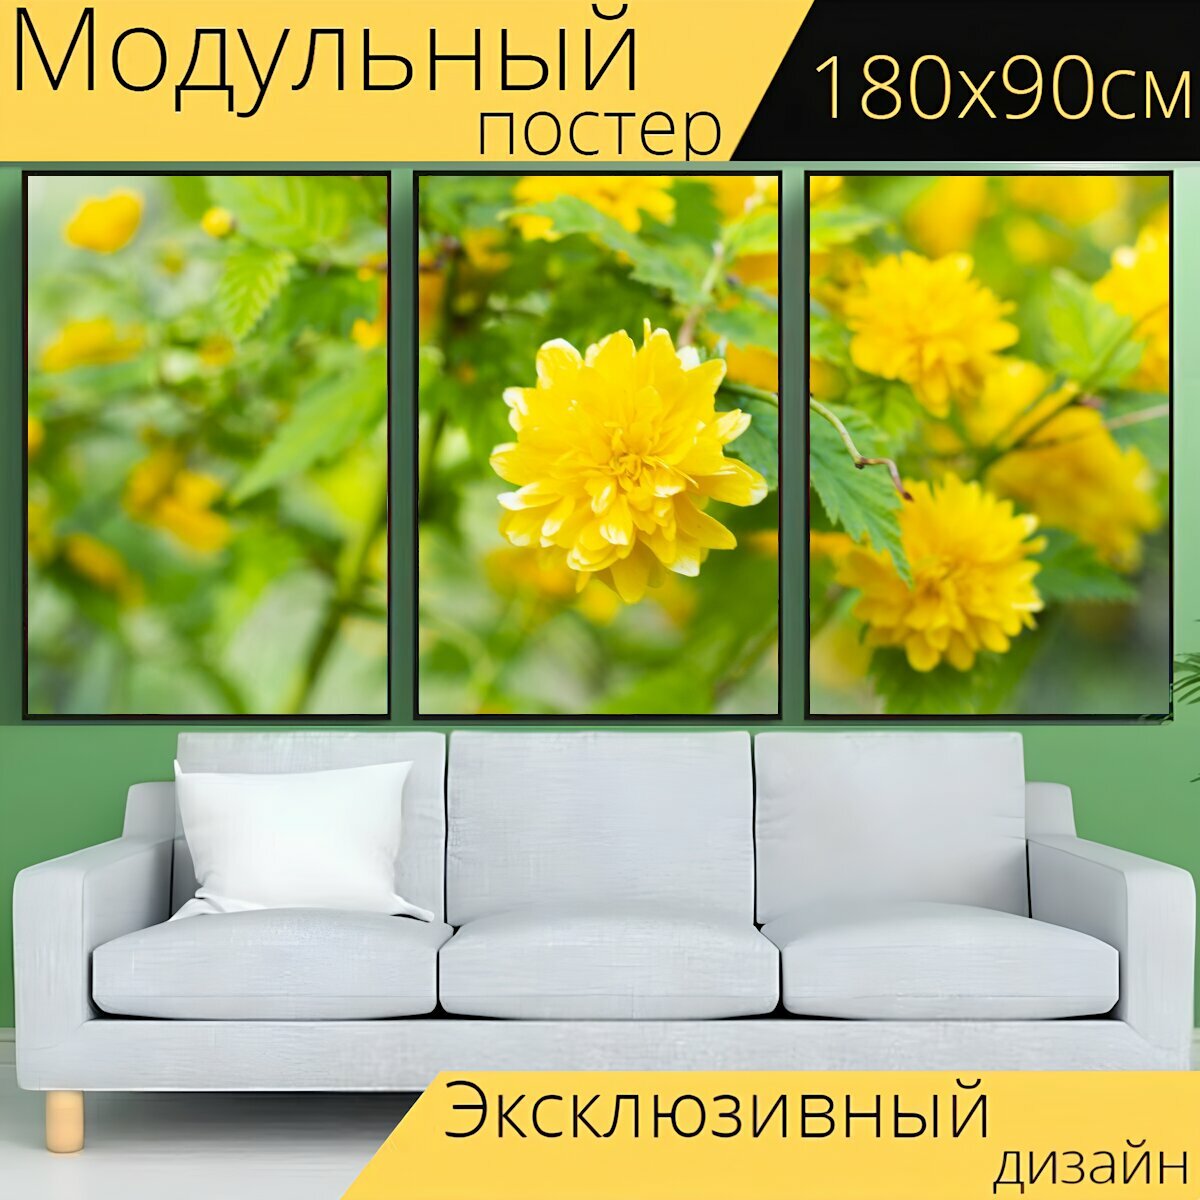 Модульный постер "Желтый, цветок, завод" 180 x 90 см. для интерьера